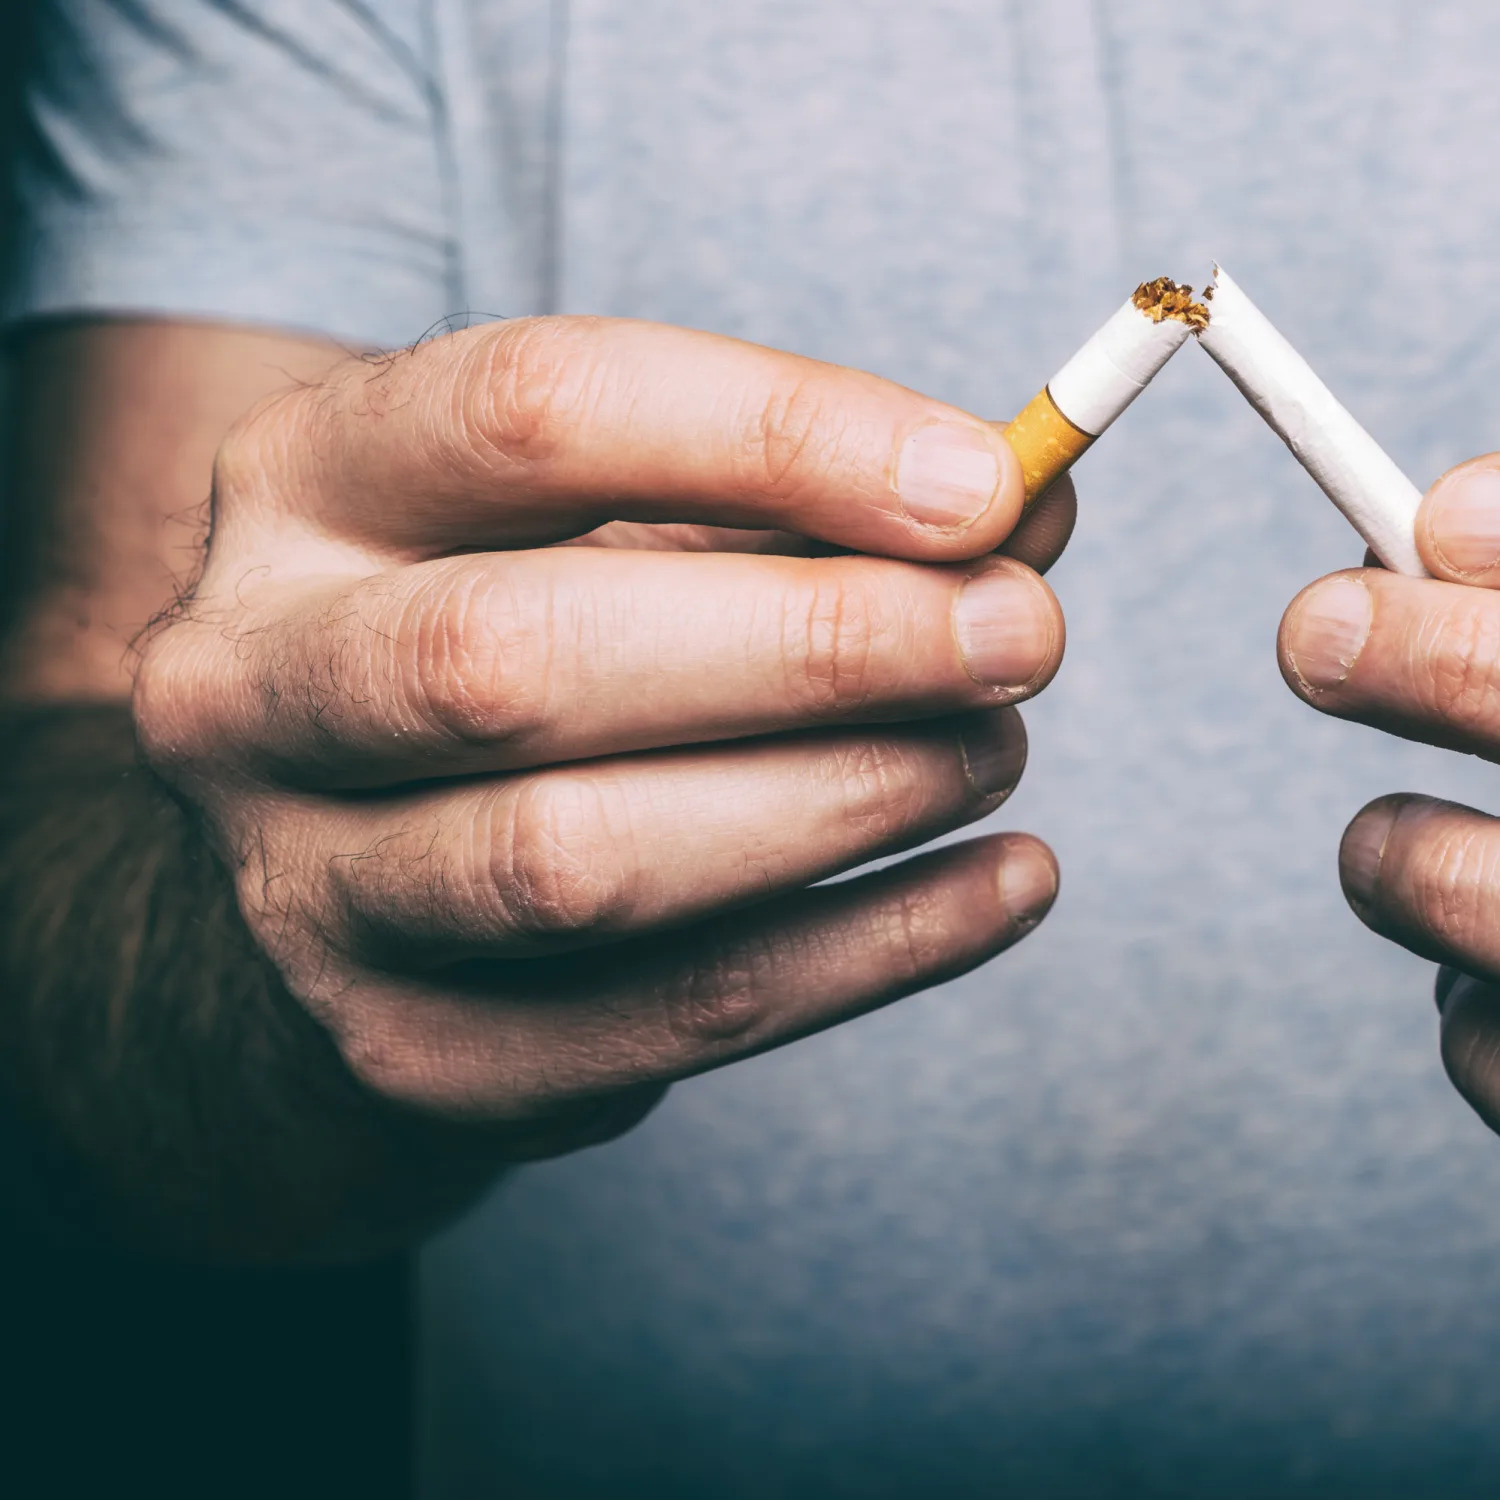 Una città inglese sta facendo grandi passi verso l’obiettivo di diventare senza fumo, e la sigaretta elettronica sta giocando un ruolo fondamentale in questo processo.